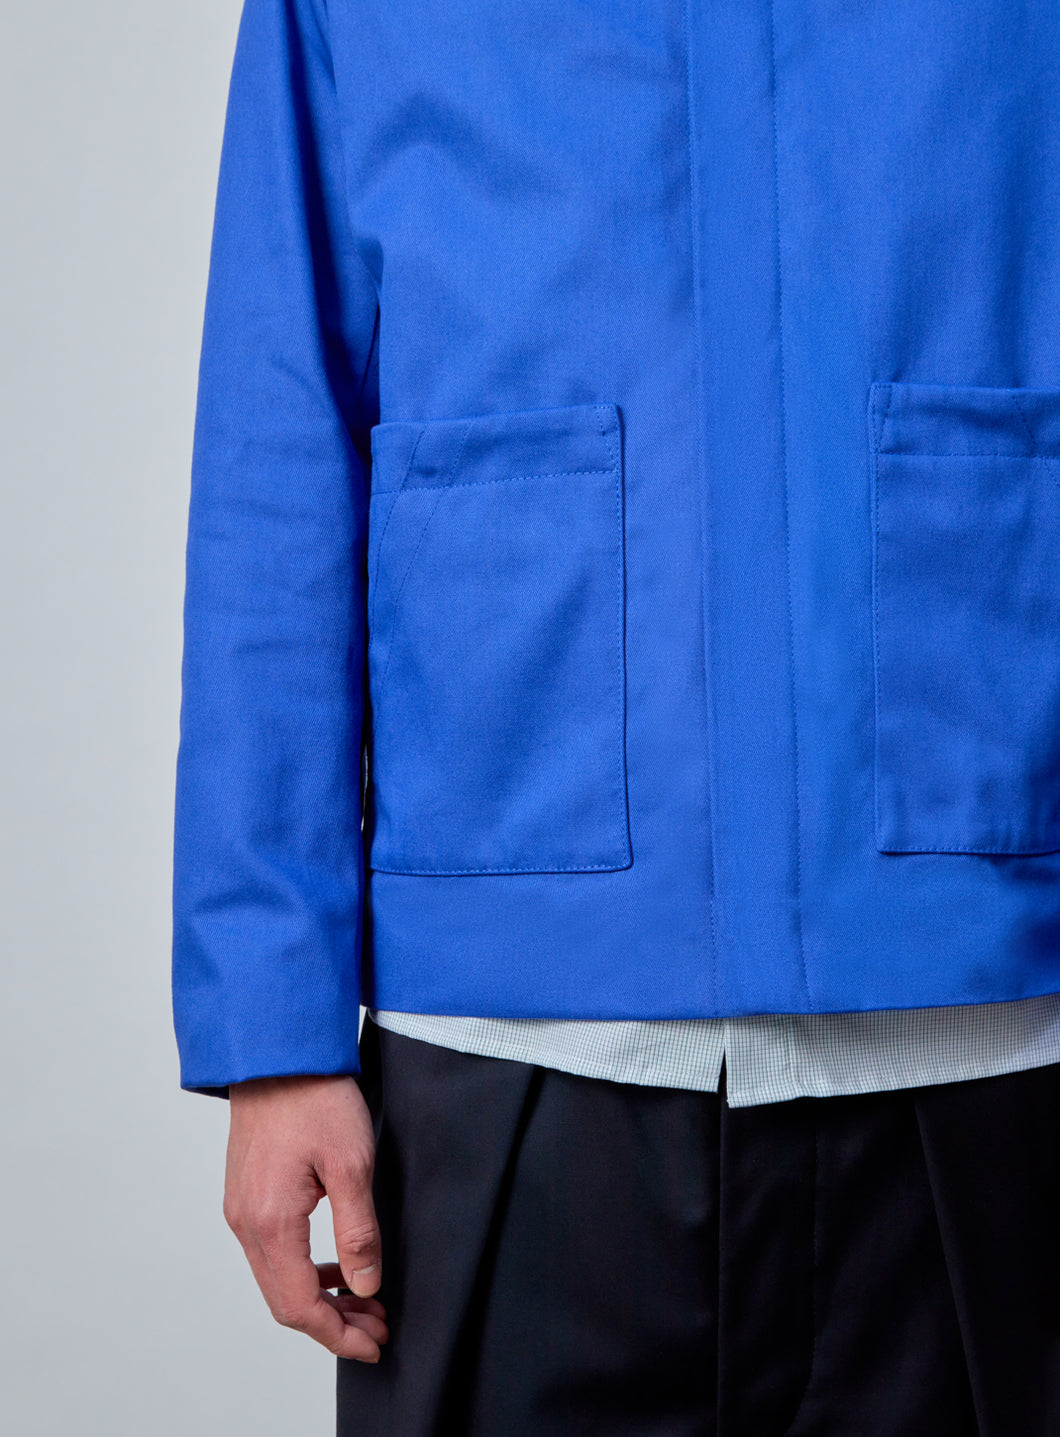 Safari Jacket in Electric Blue Cotton Gabardine